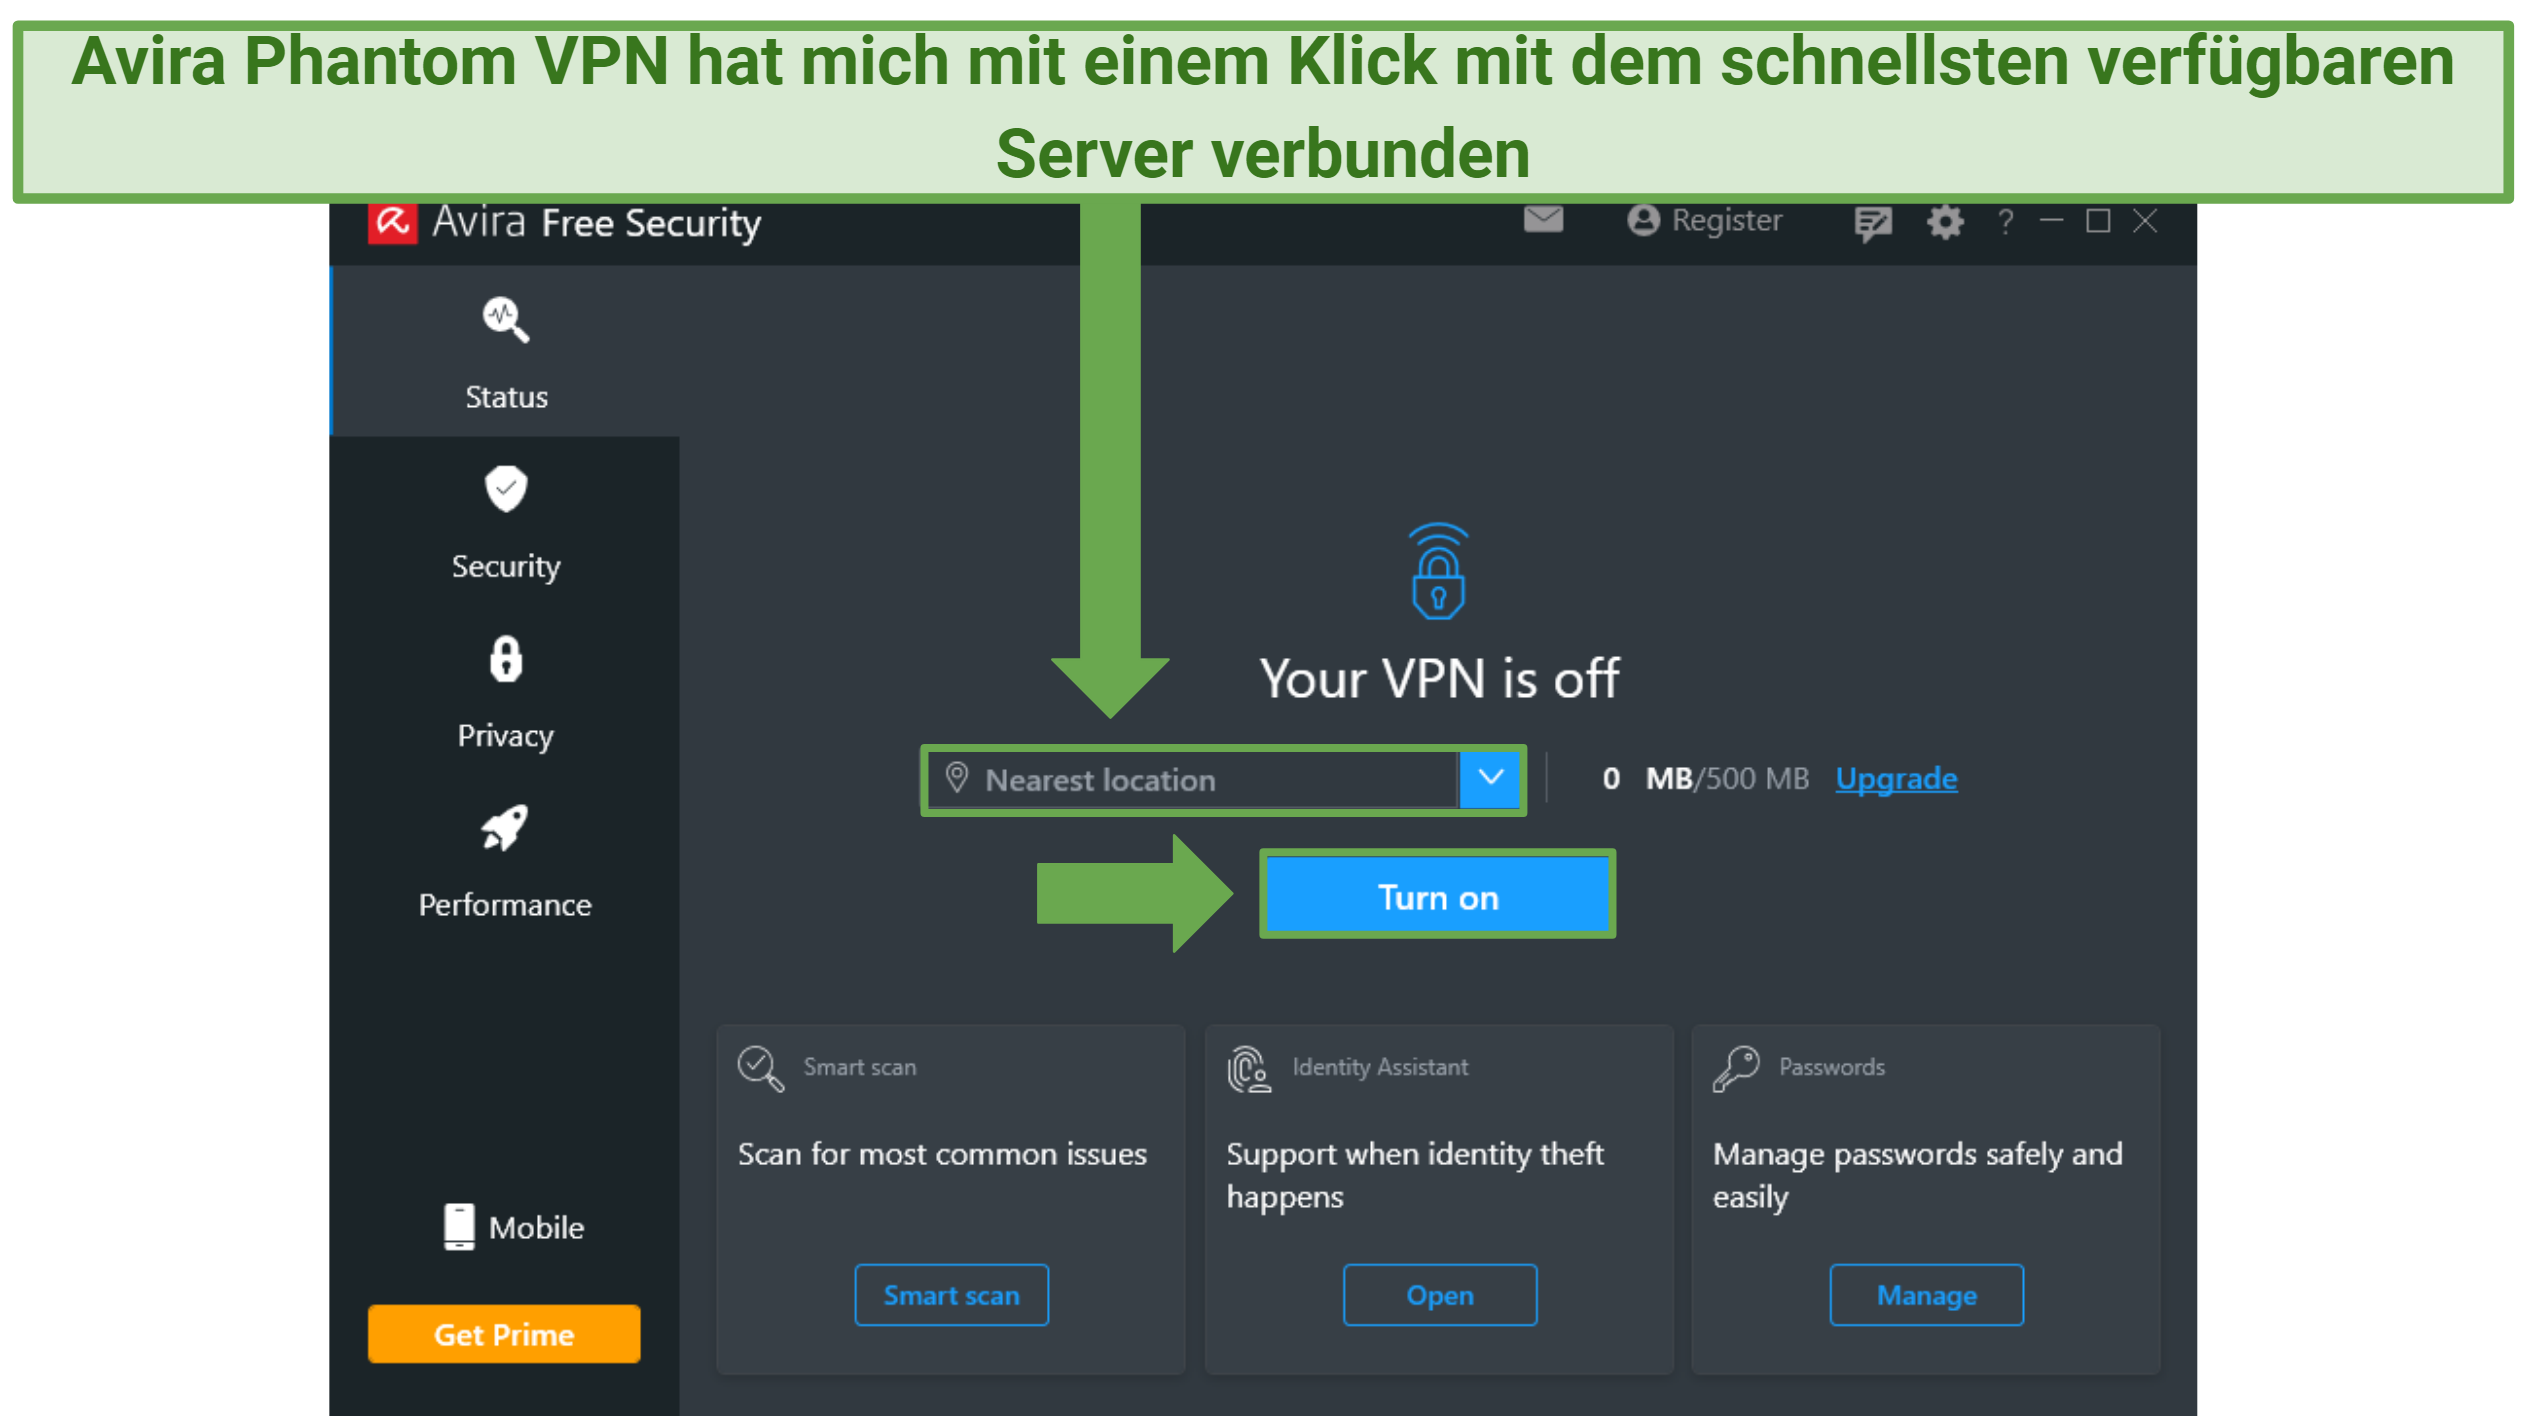 Screenshot von der Benutzeroberfläche des Avira Phantom VPN